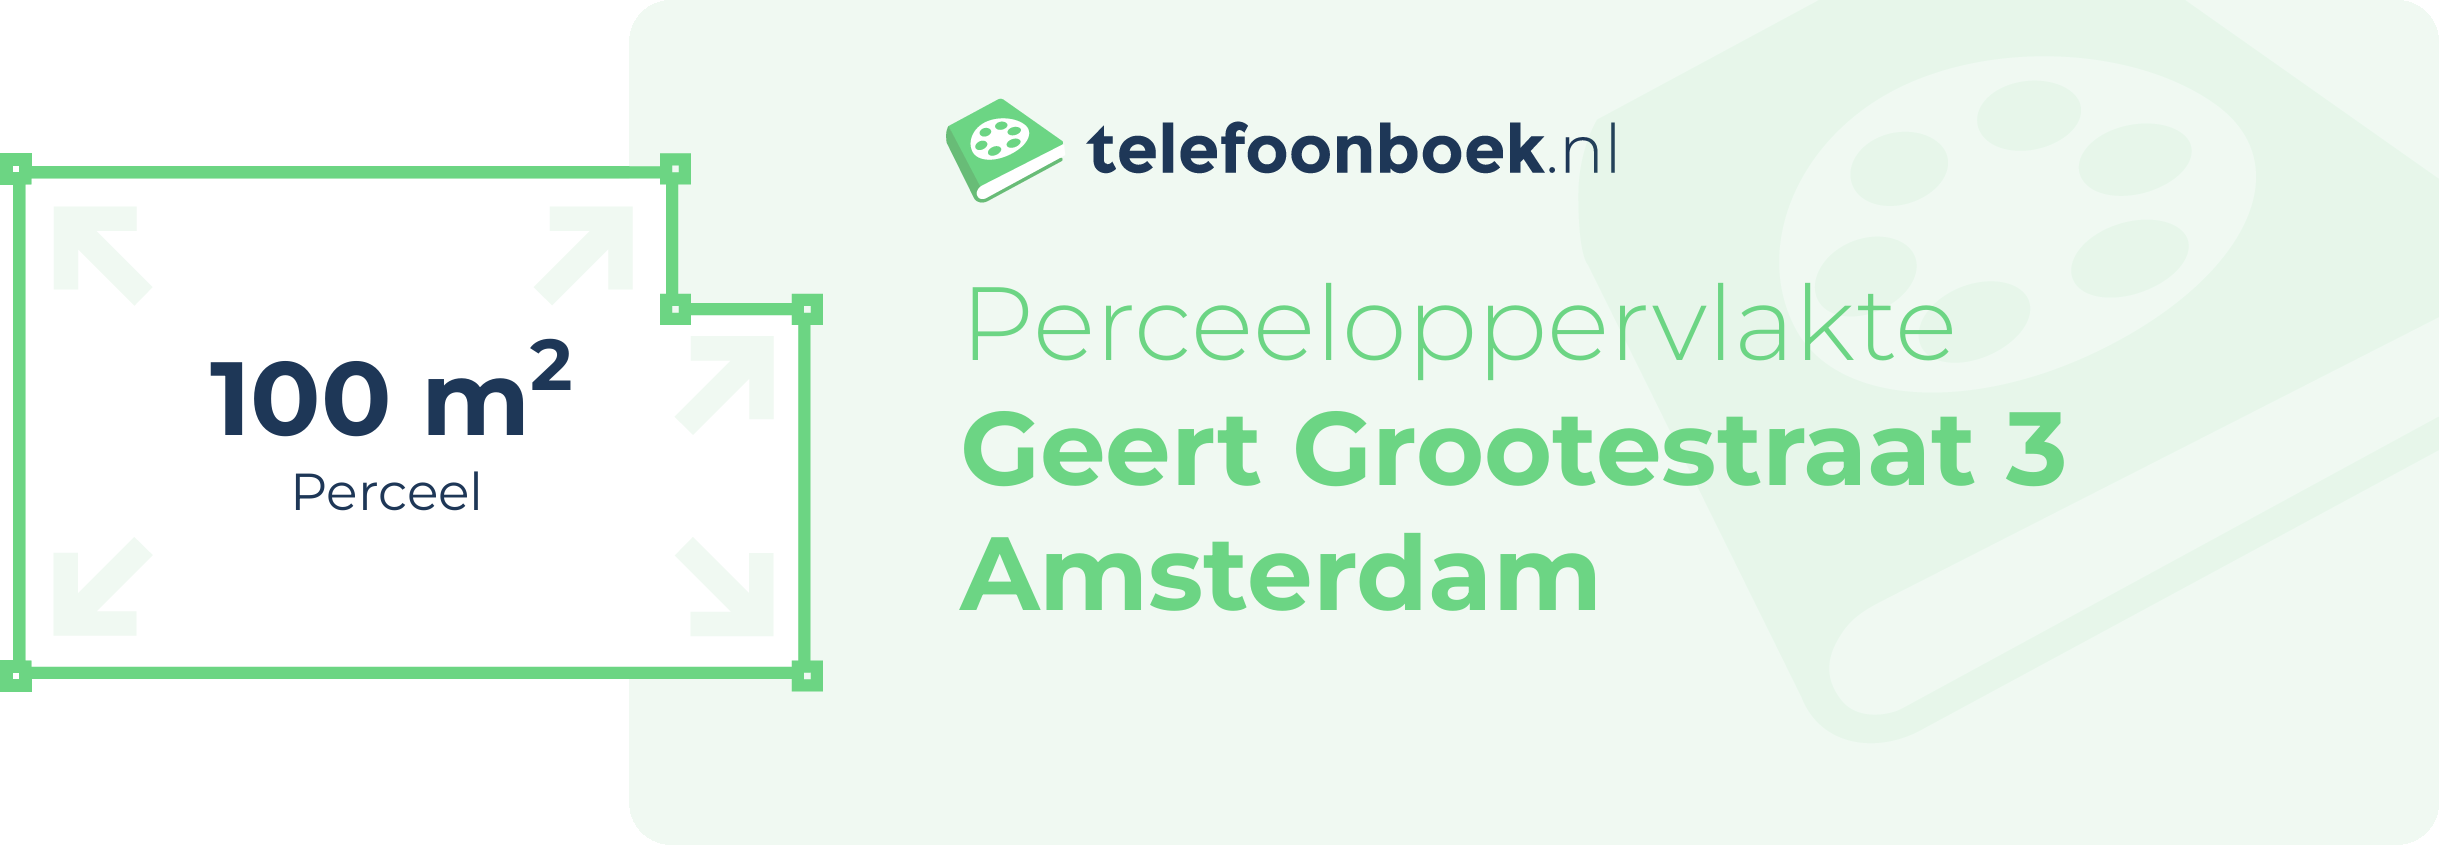 Perceeloppervlakte Geert Grootestraat 3 Amsterdam